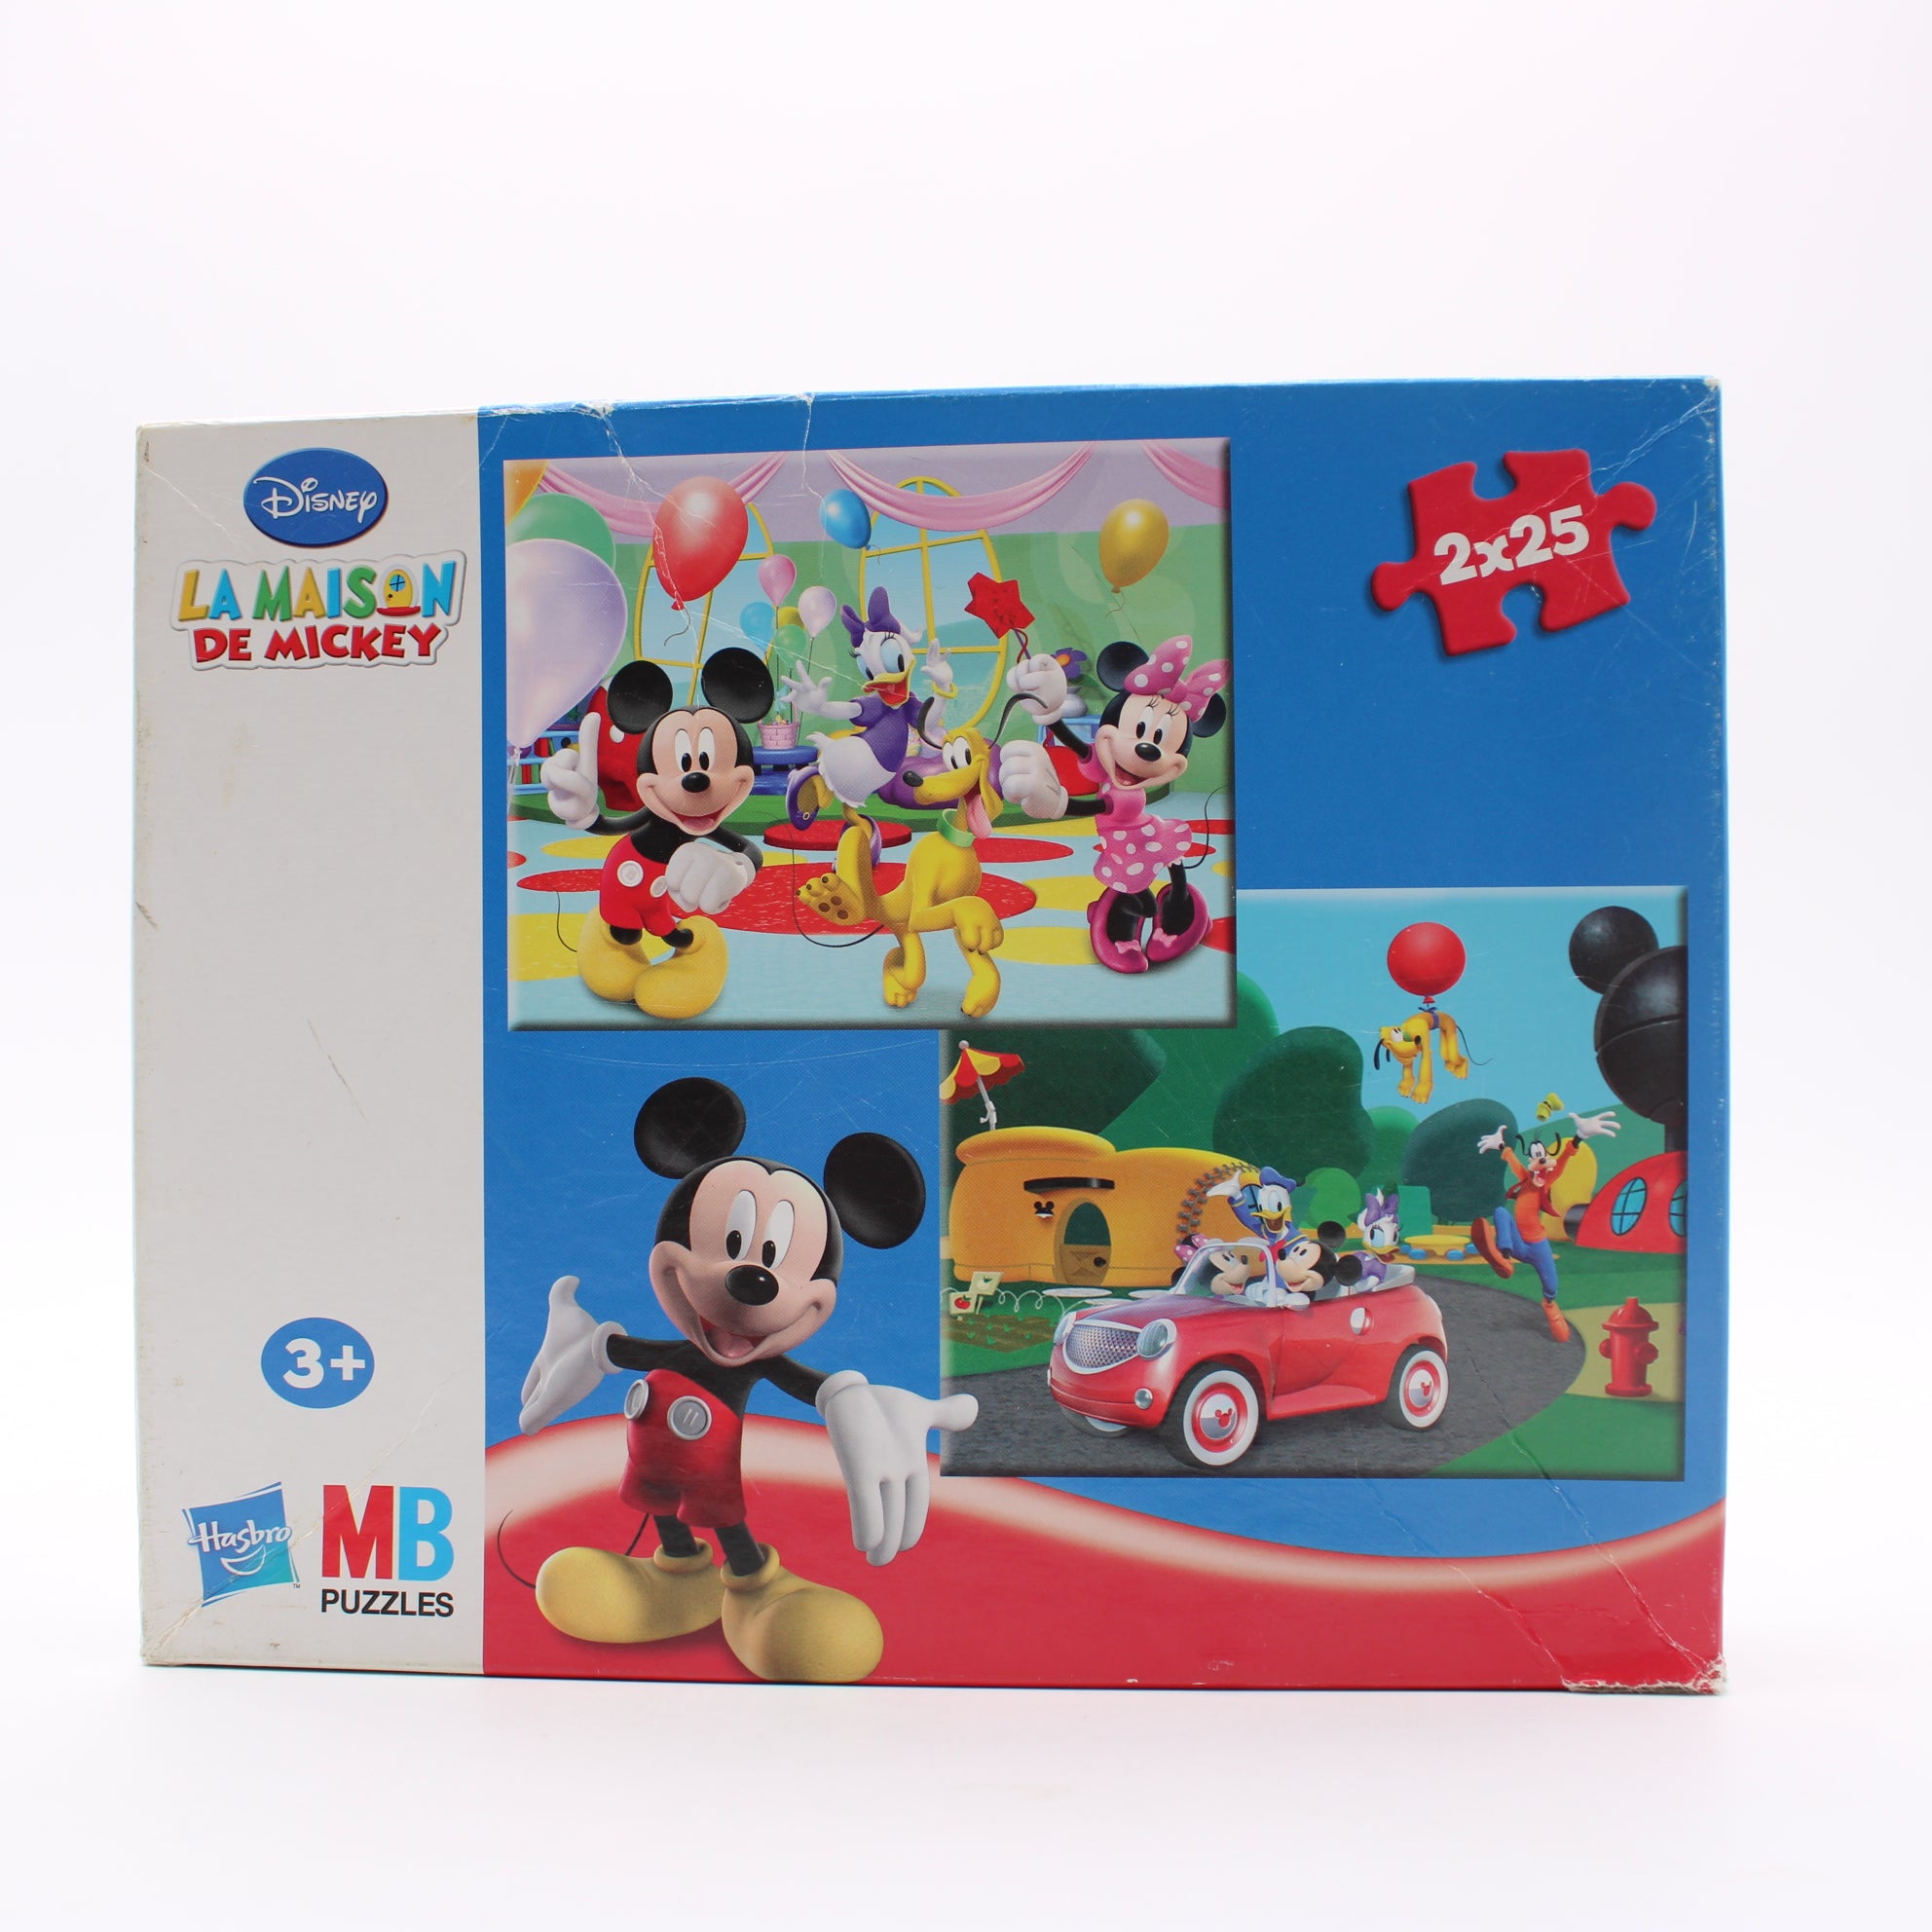 Puzzle Disney - La maison de Mickey - 2x25 pièces- Édition 2010